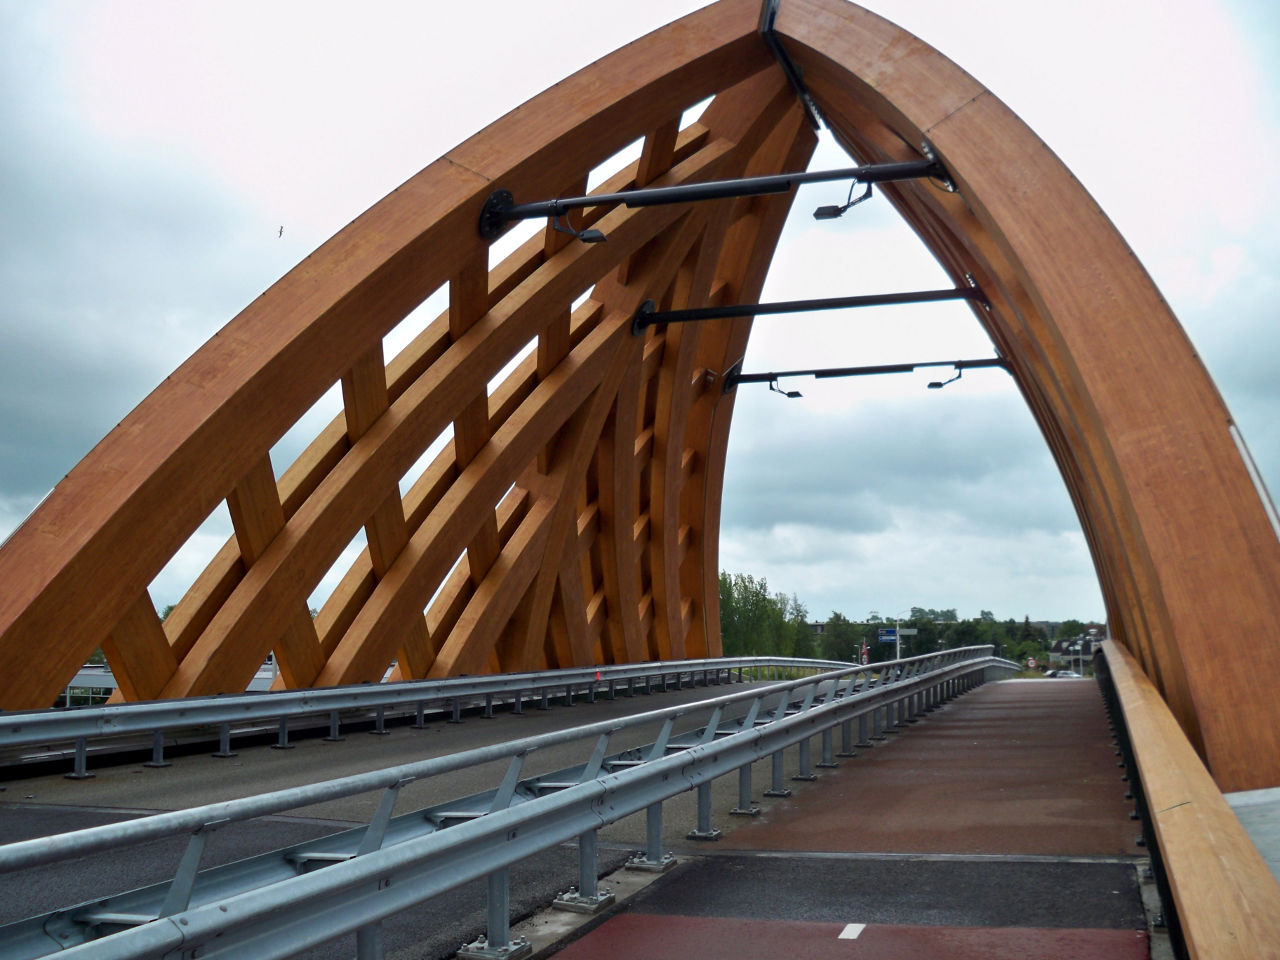 Accoya Wood bridge